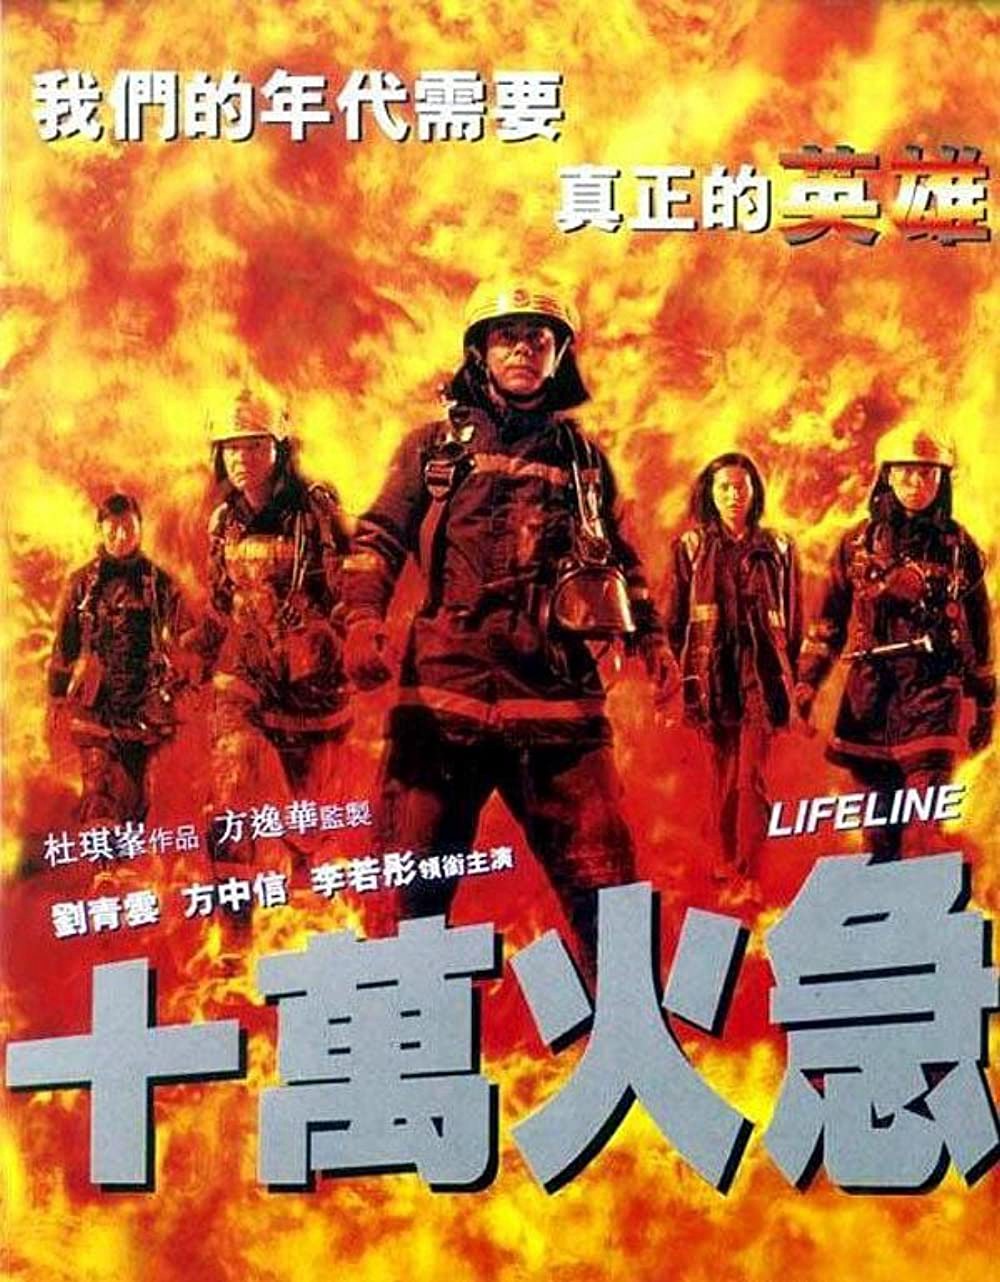 Thập vạn hỏa cấp - Thập vạn hỏa cấp (1997)